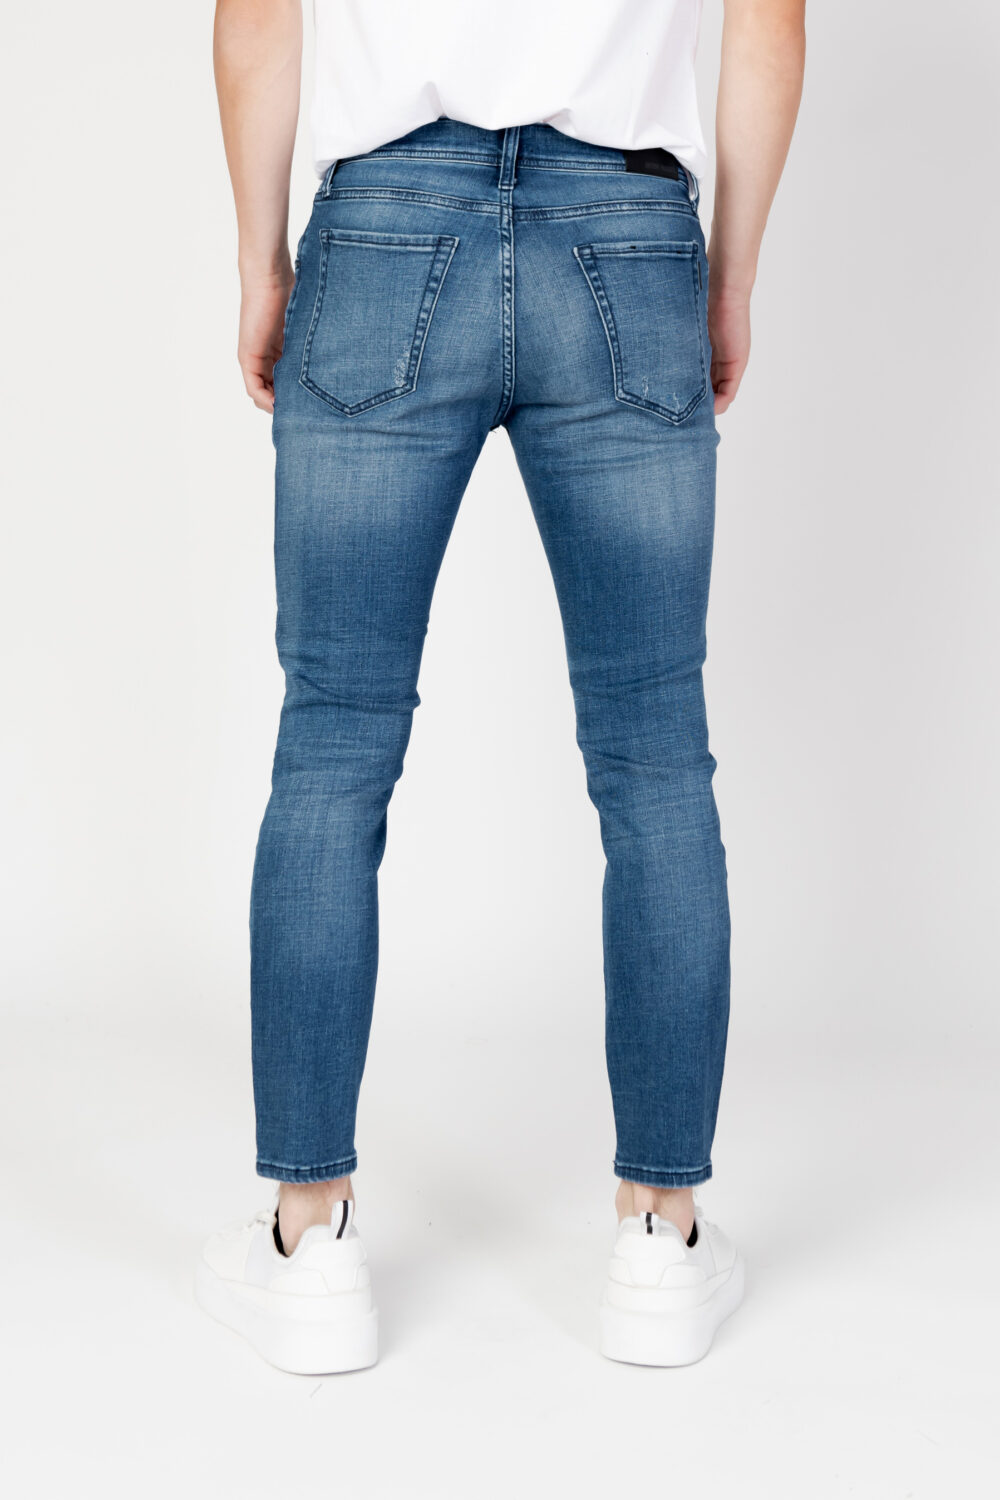 Jeans skinny Antony Morato karl skinny cropped fit Denim - Foto 8